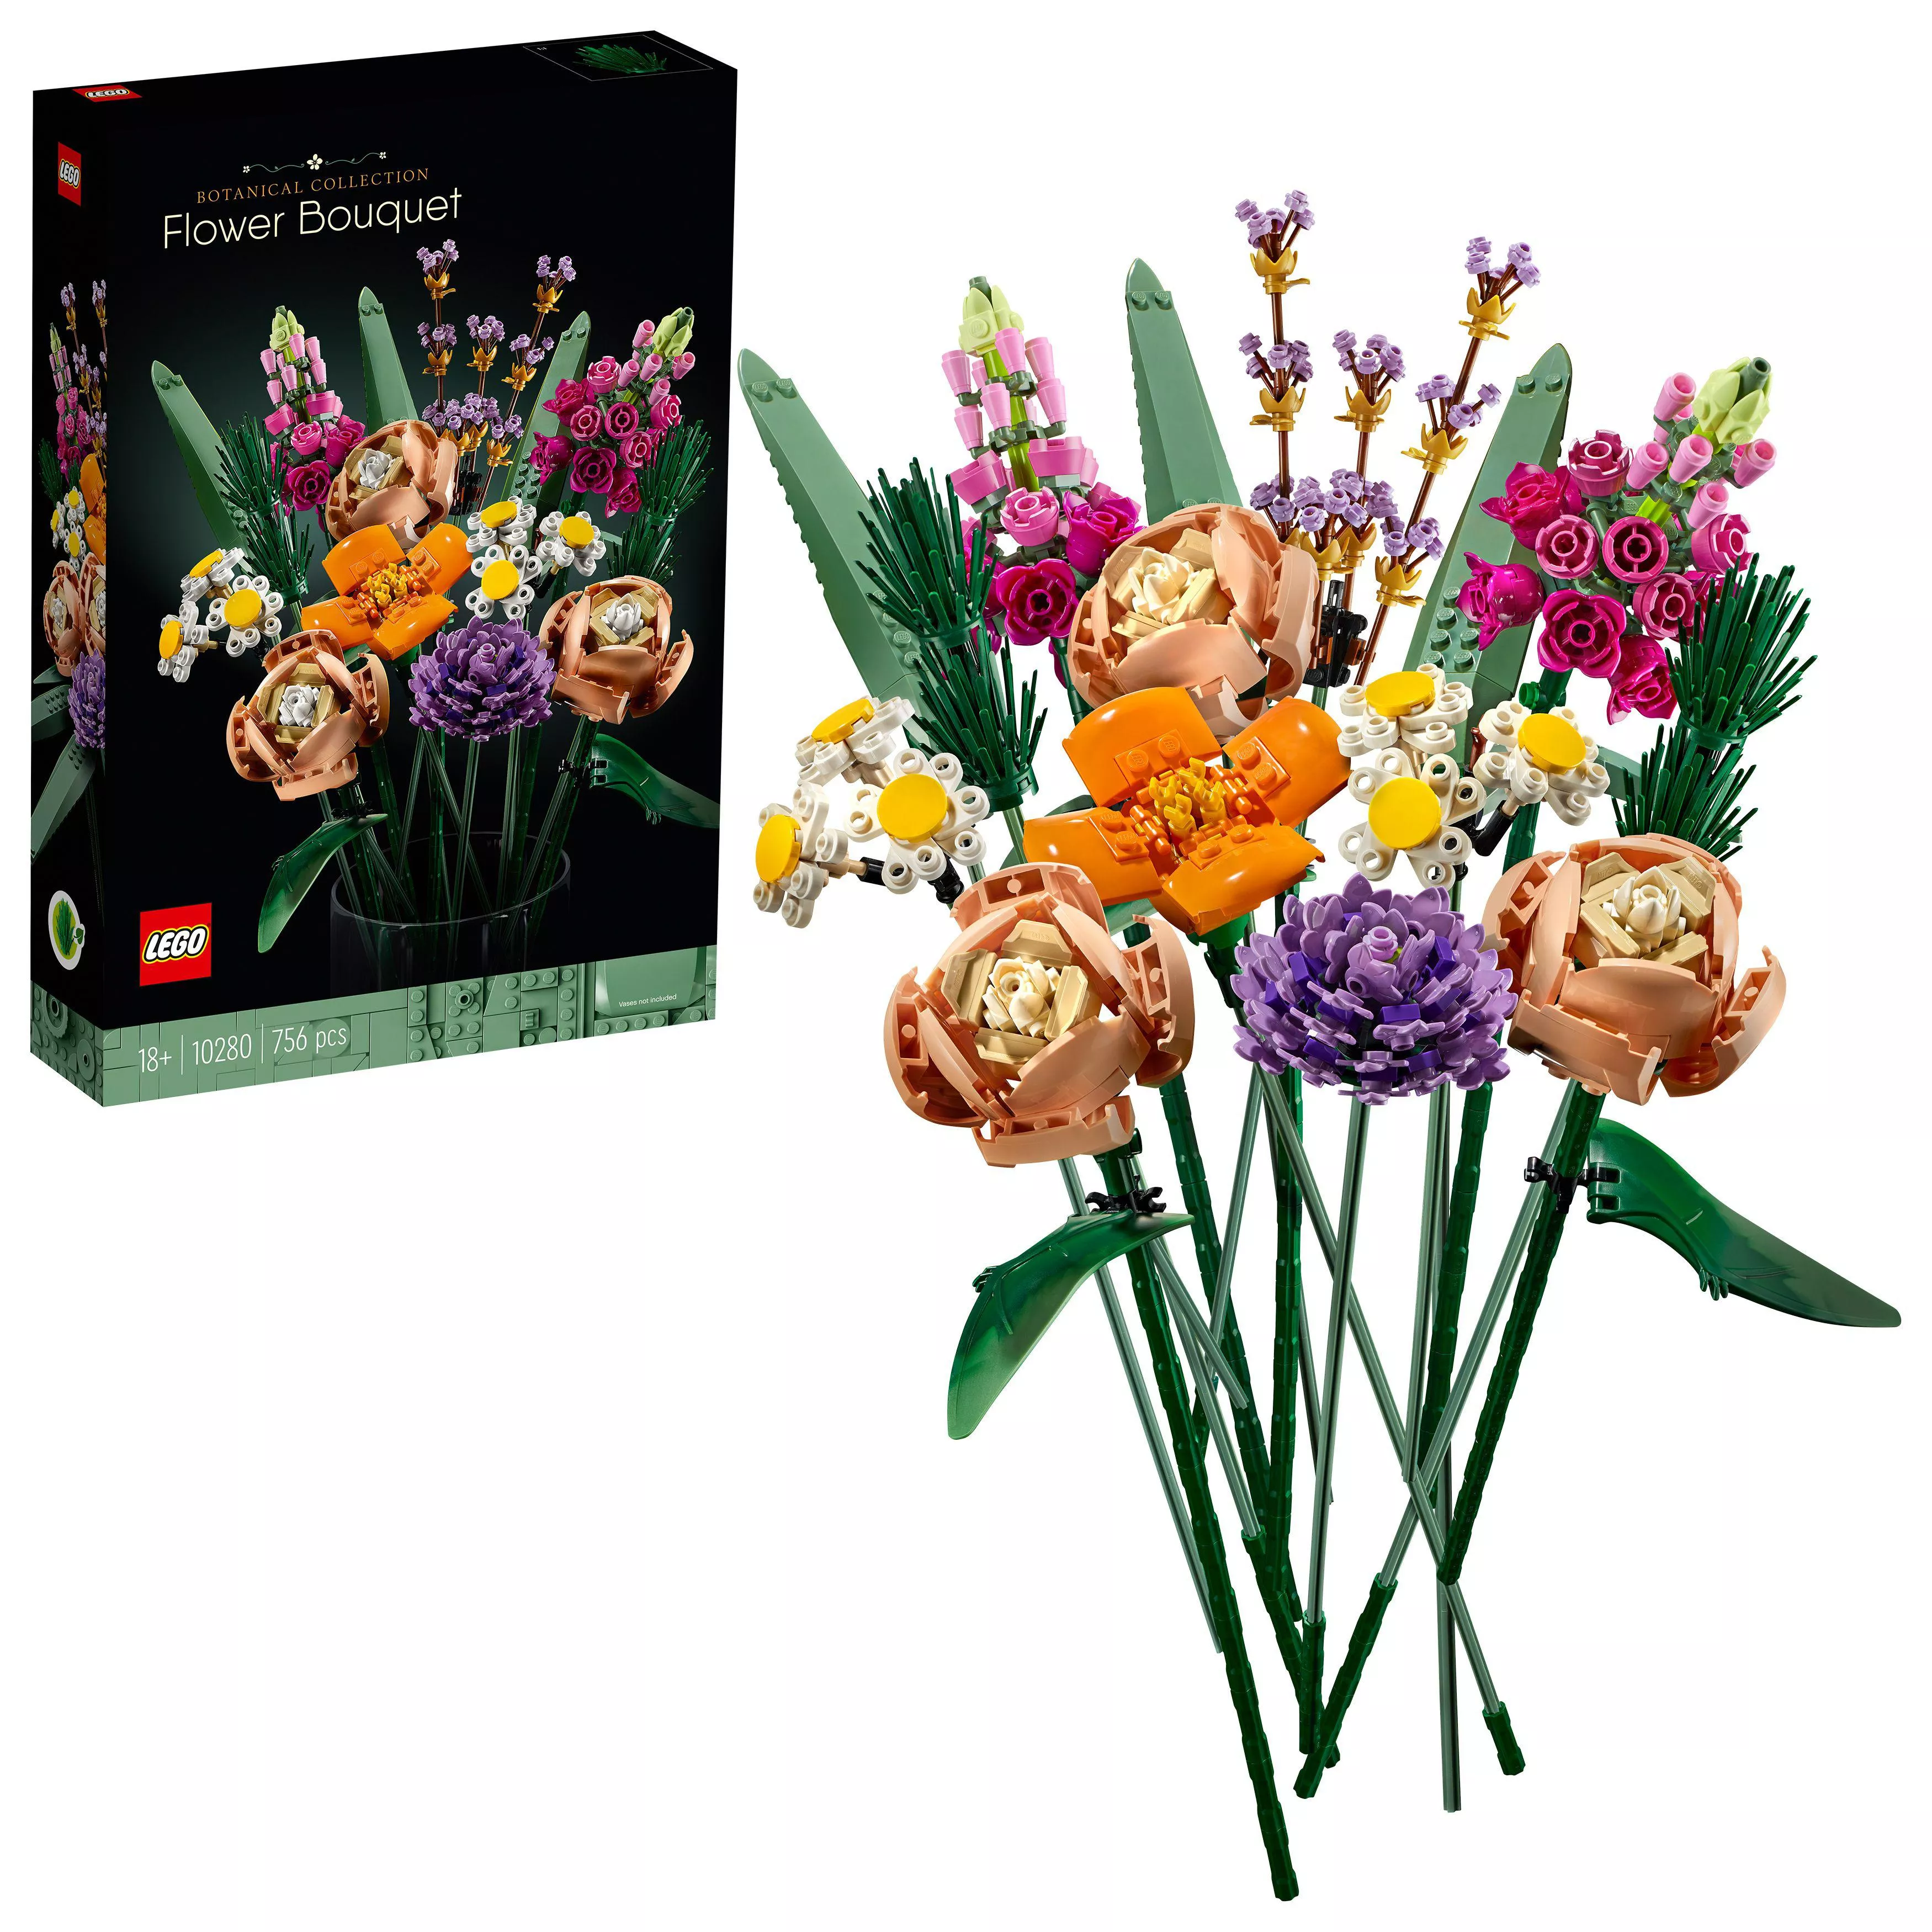 LEGO 10280 Creator Expert Blumenstrauß